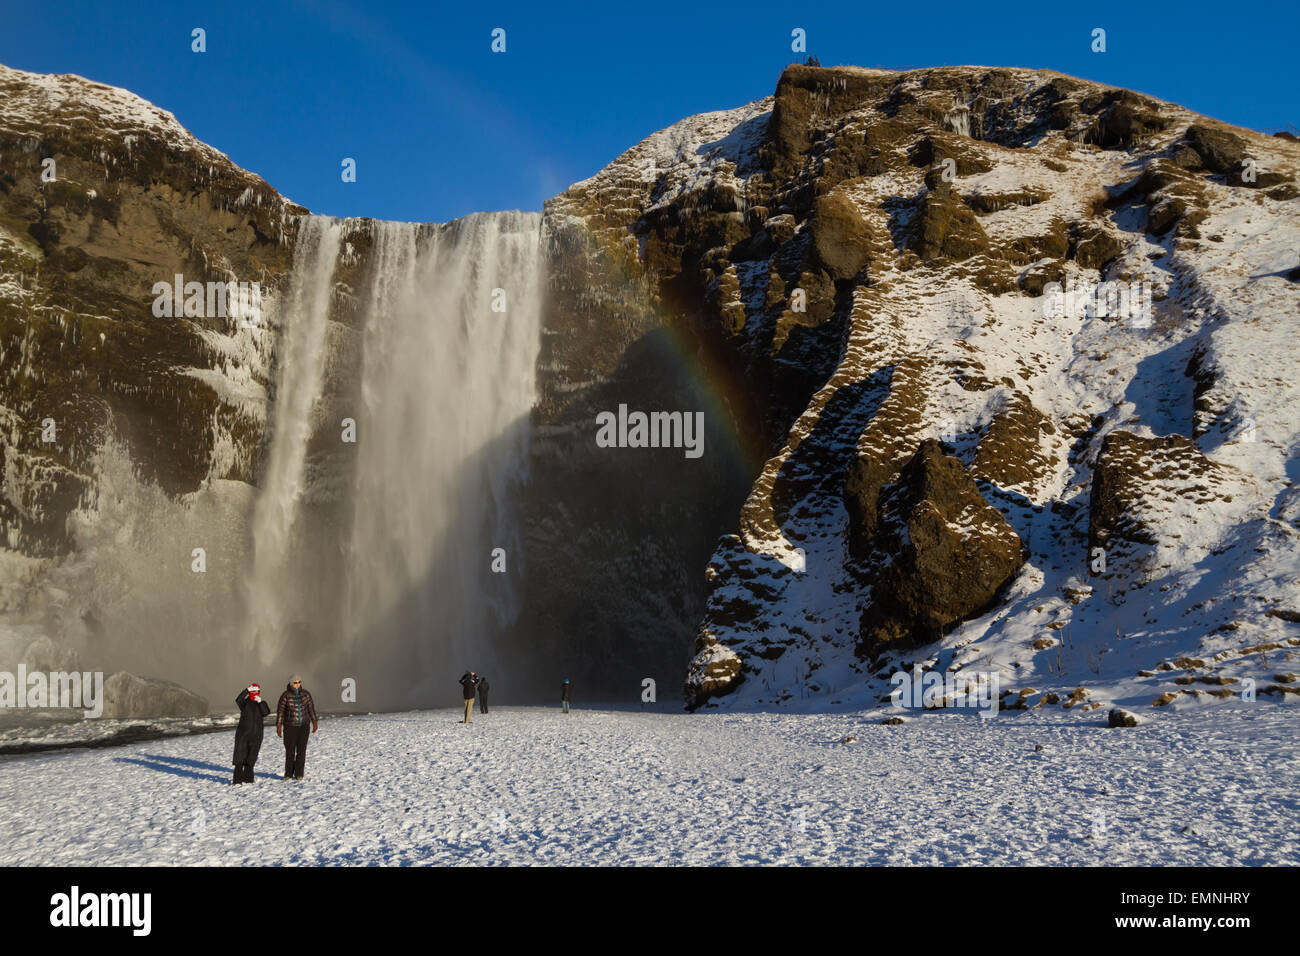 Ai turisti di ammirare la cascata Skogafoss in Islanda durante la breve giornata invernale Foto Stock